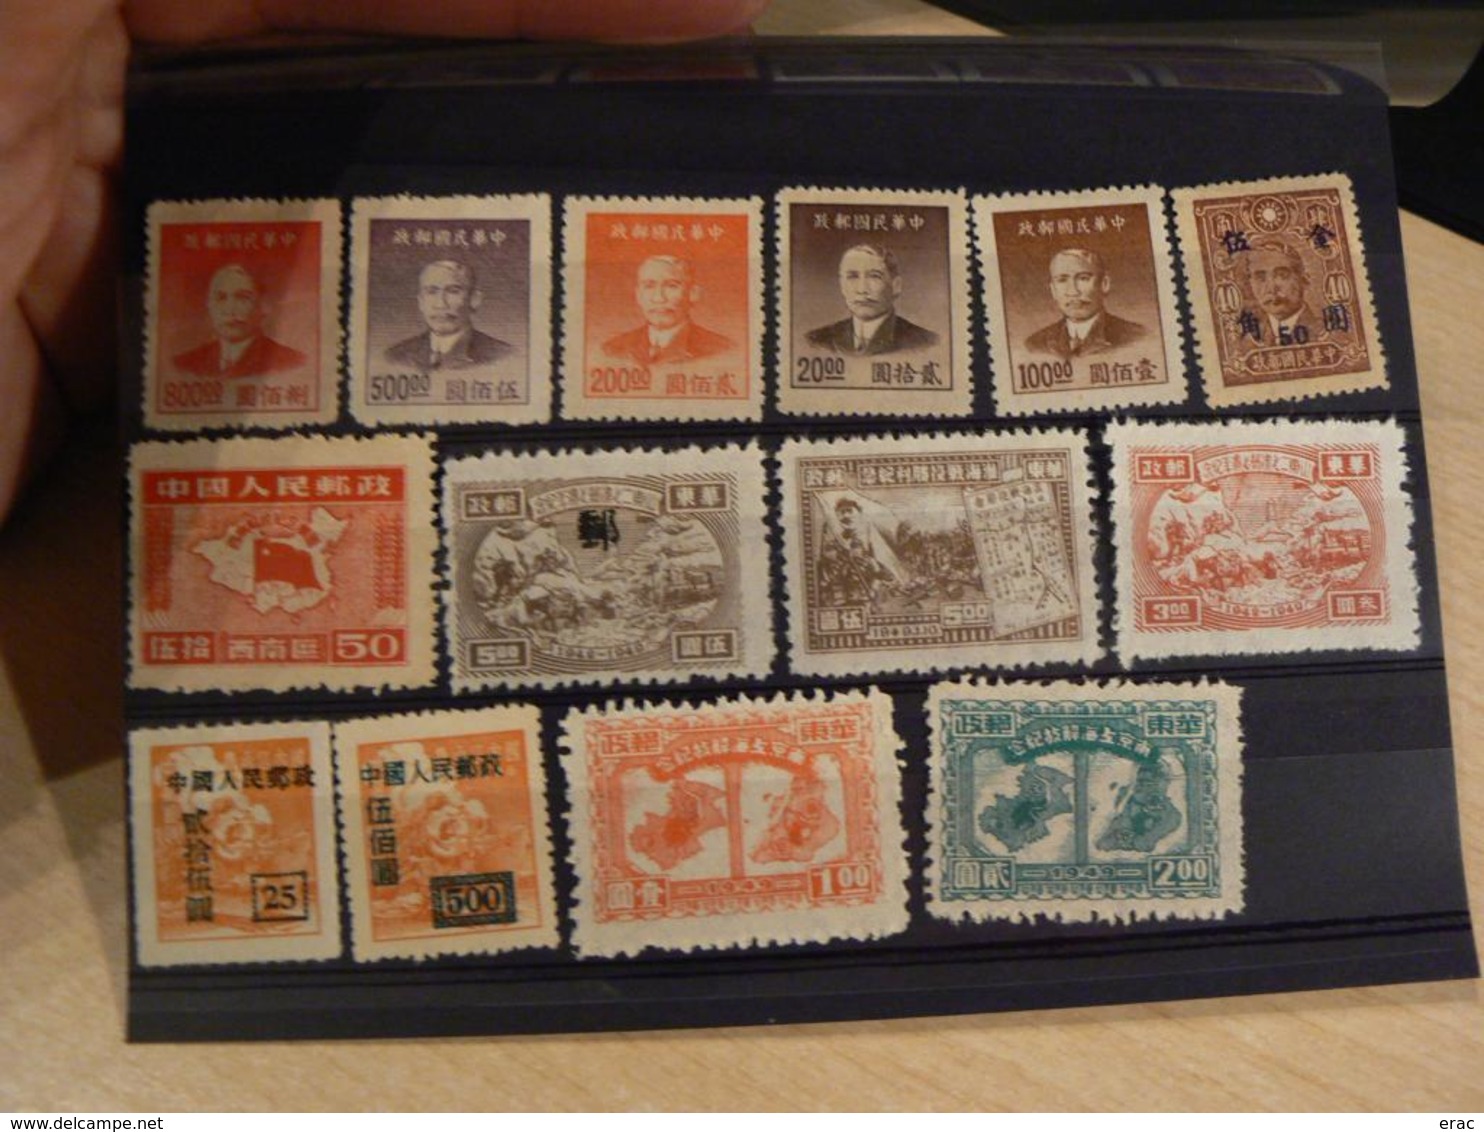 CHINE dont Chine impériale - Lot de timbres anciens et récents - Neufs et oblitérés - Cote +++